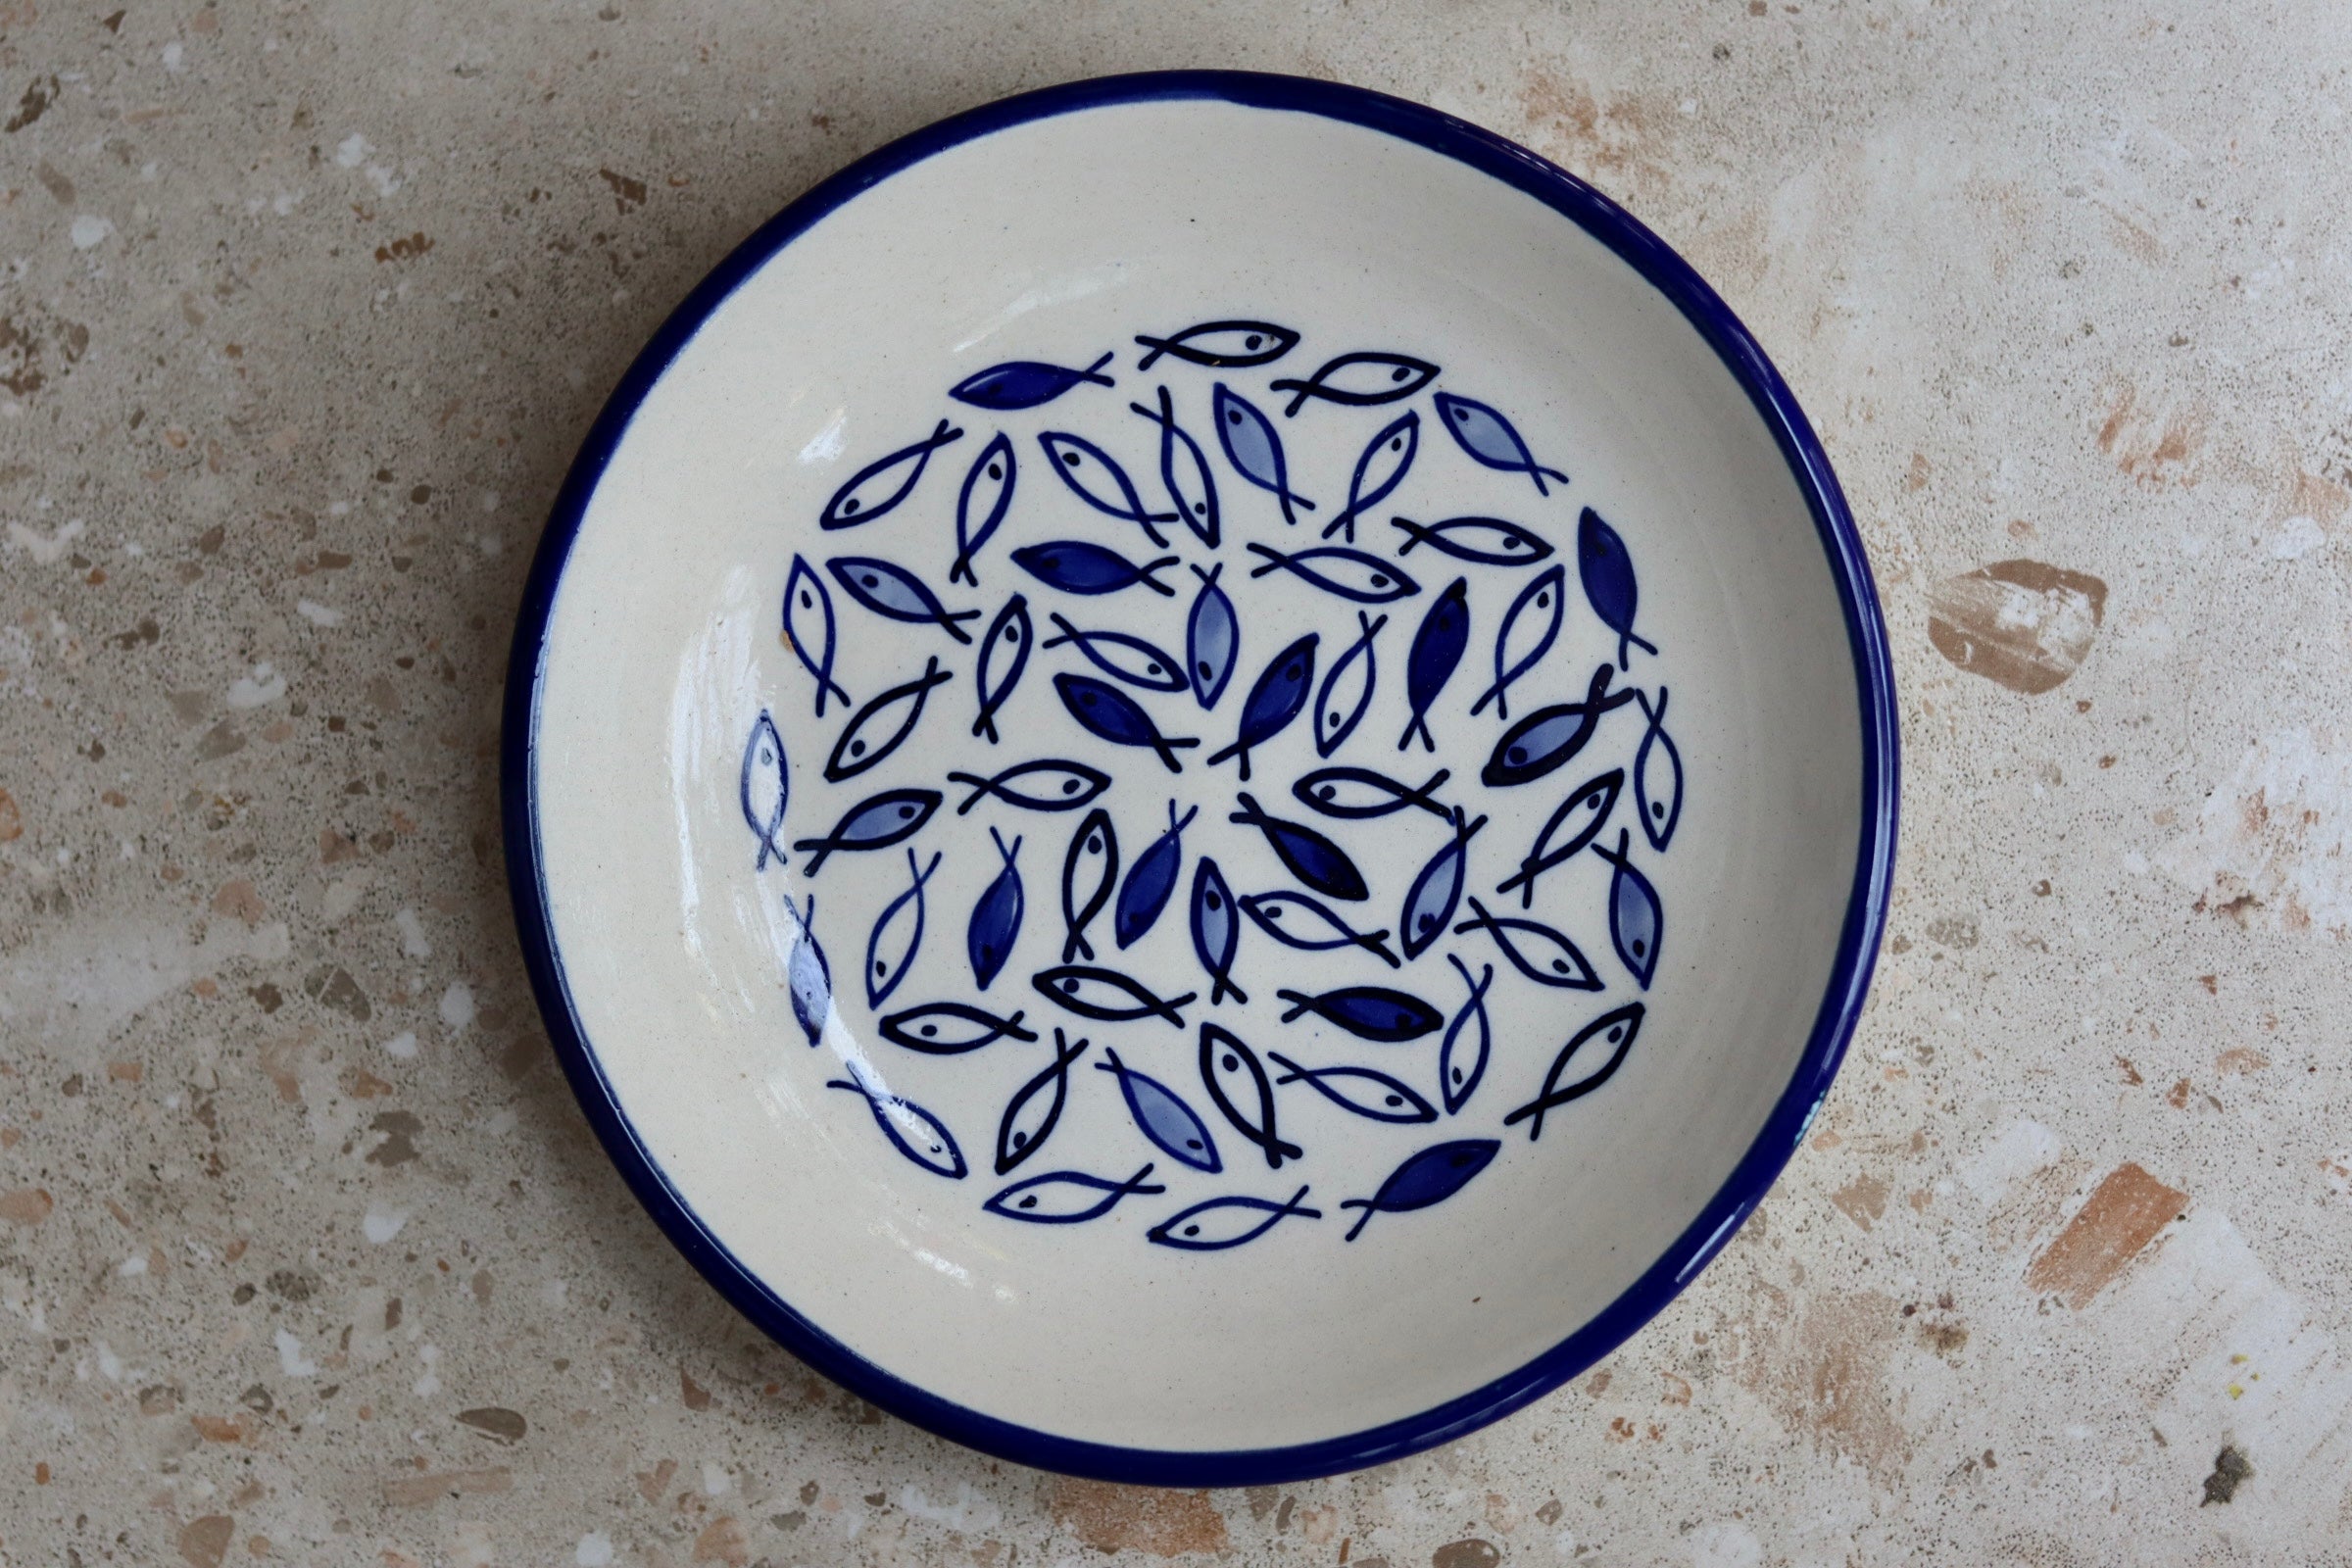 Fish pasta plate handmade ceramic 